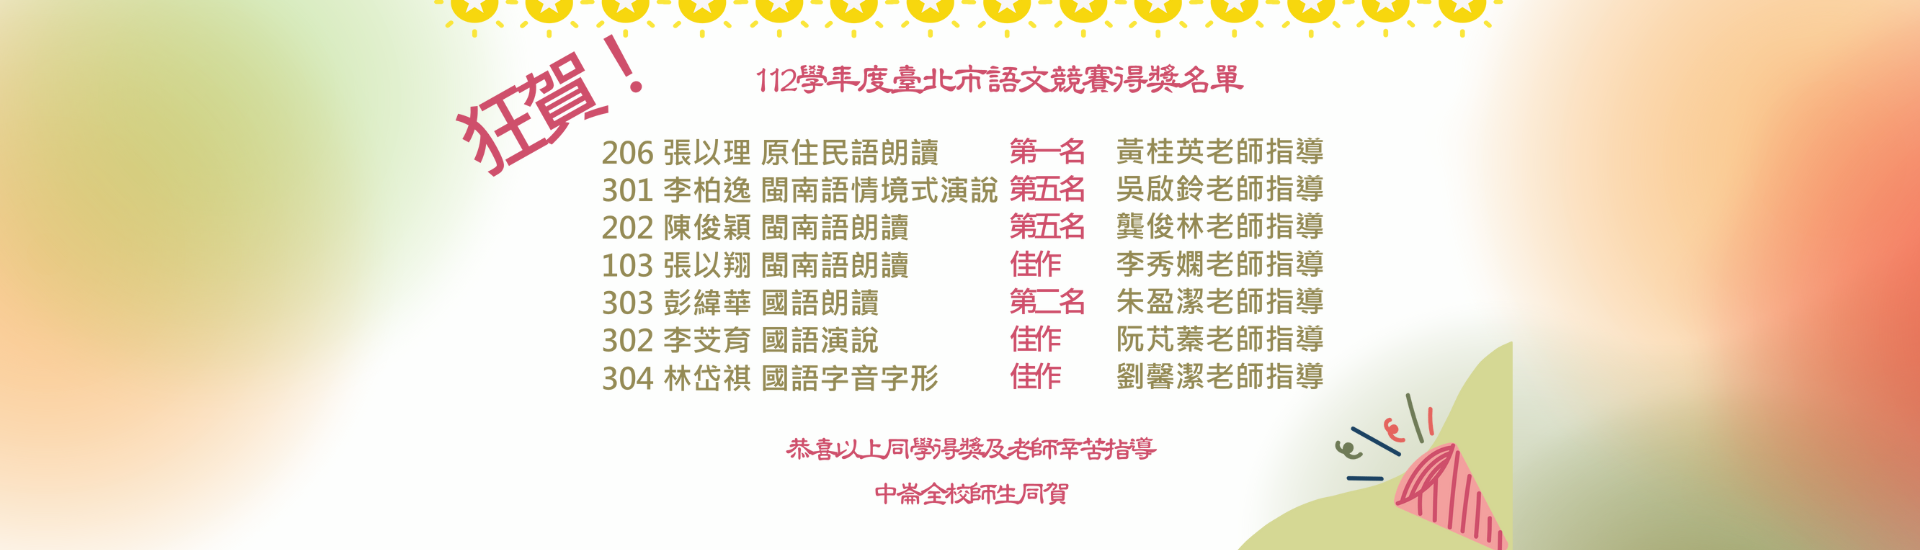 1120925-112學年度臺北市語文競賽得獎名單橫幅